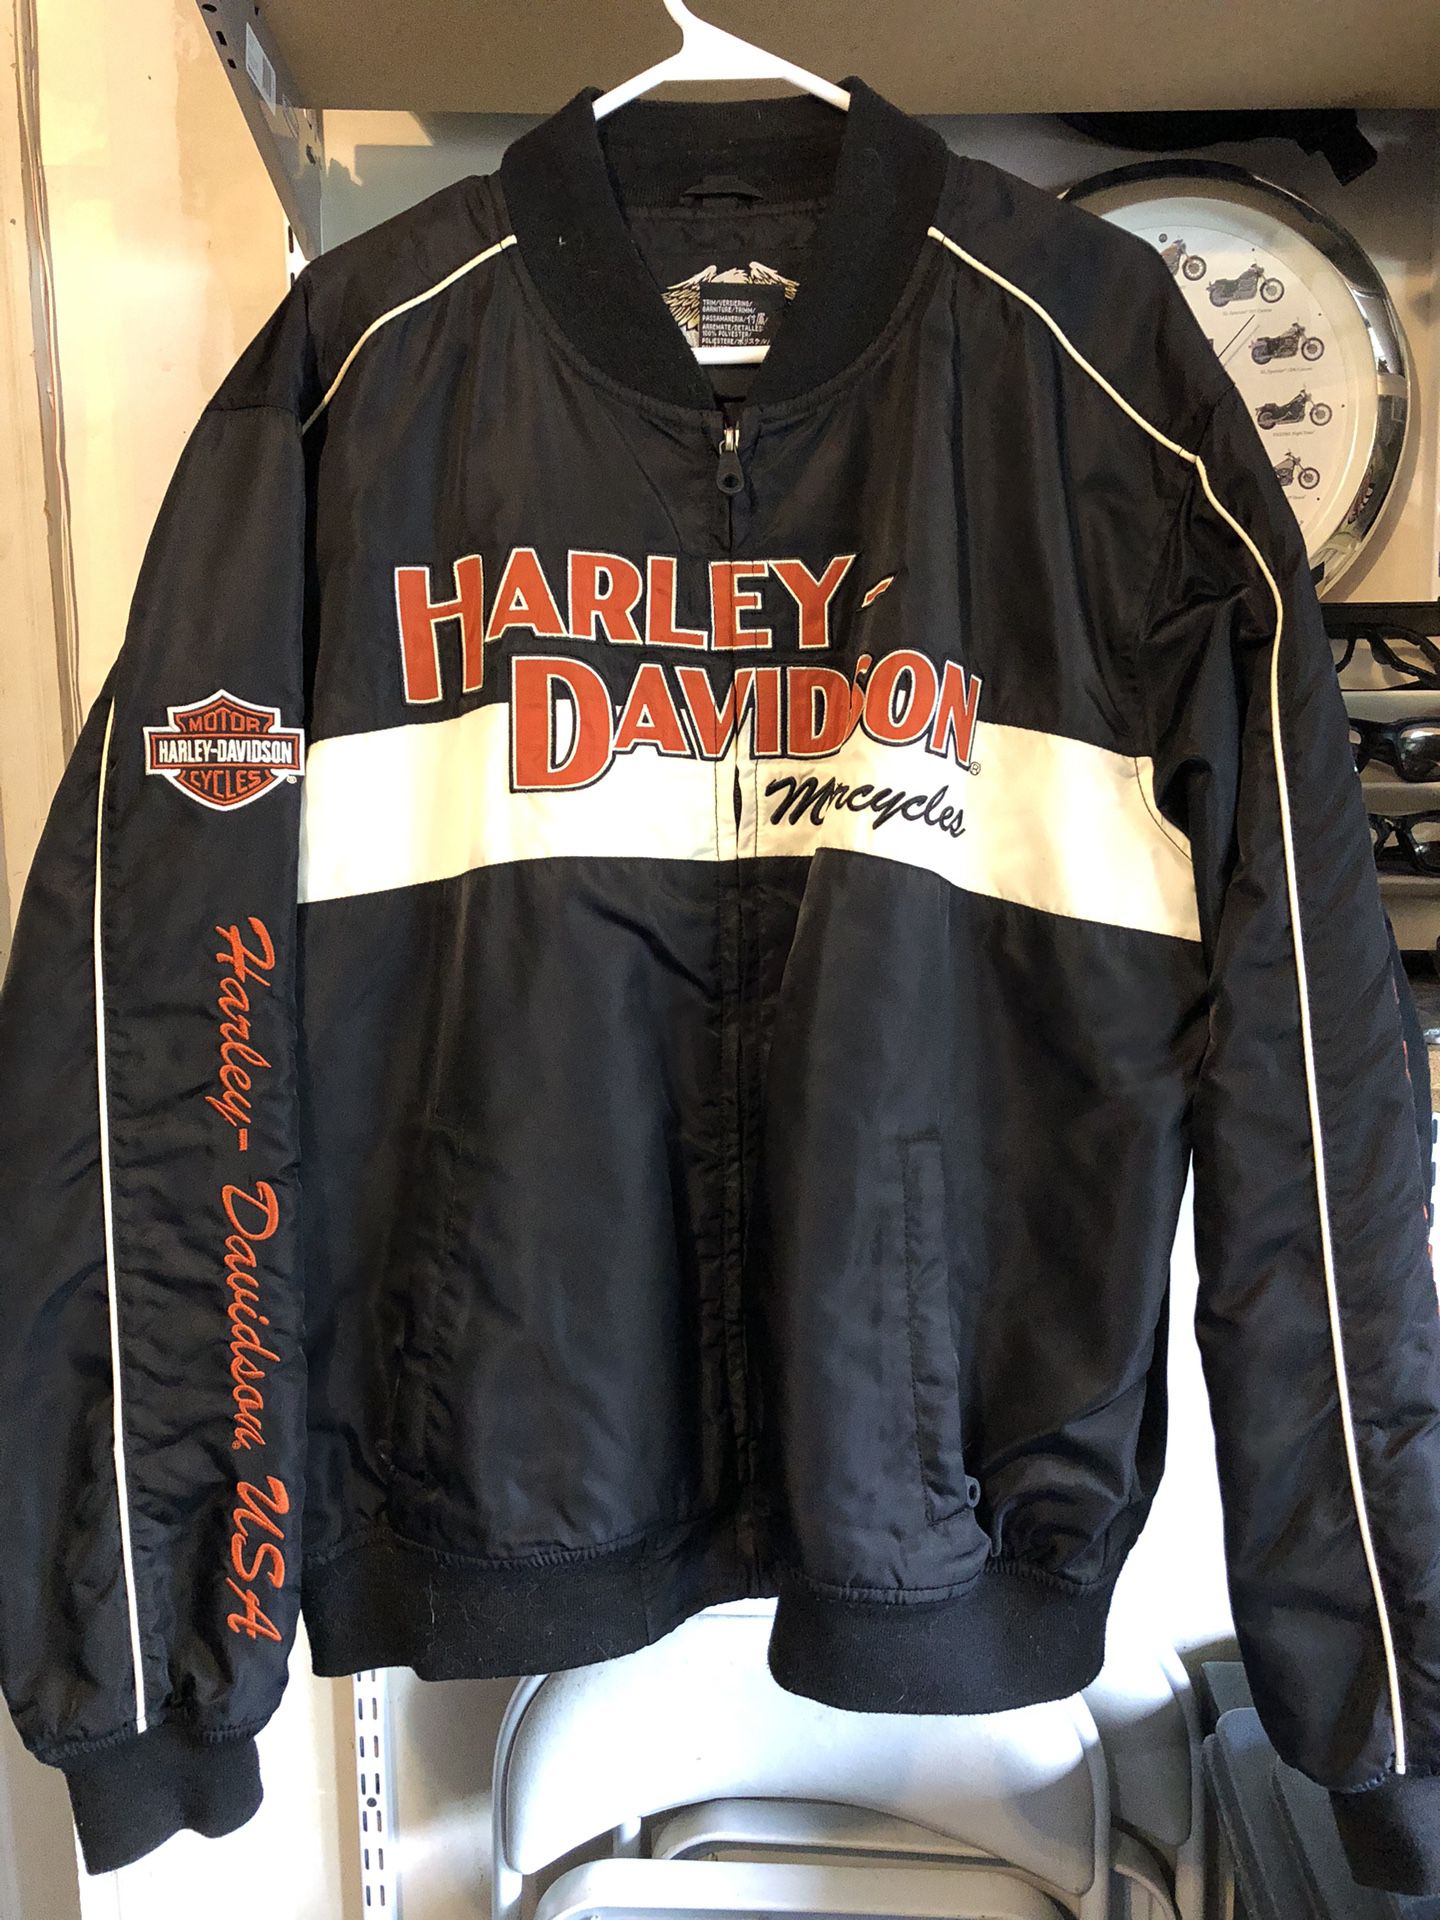 Harley Davidson Bomber Style Jacket